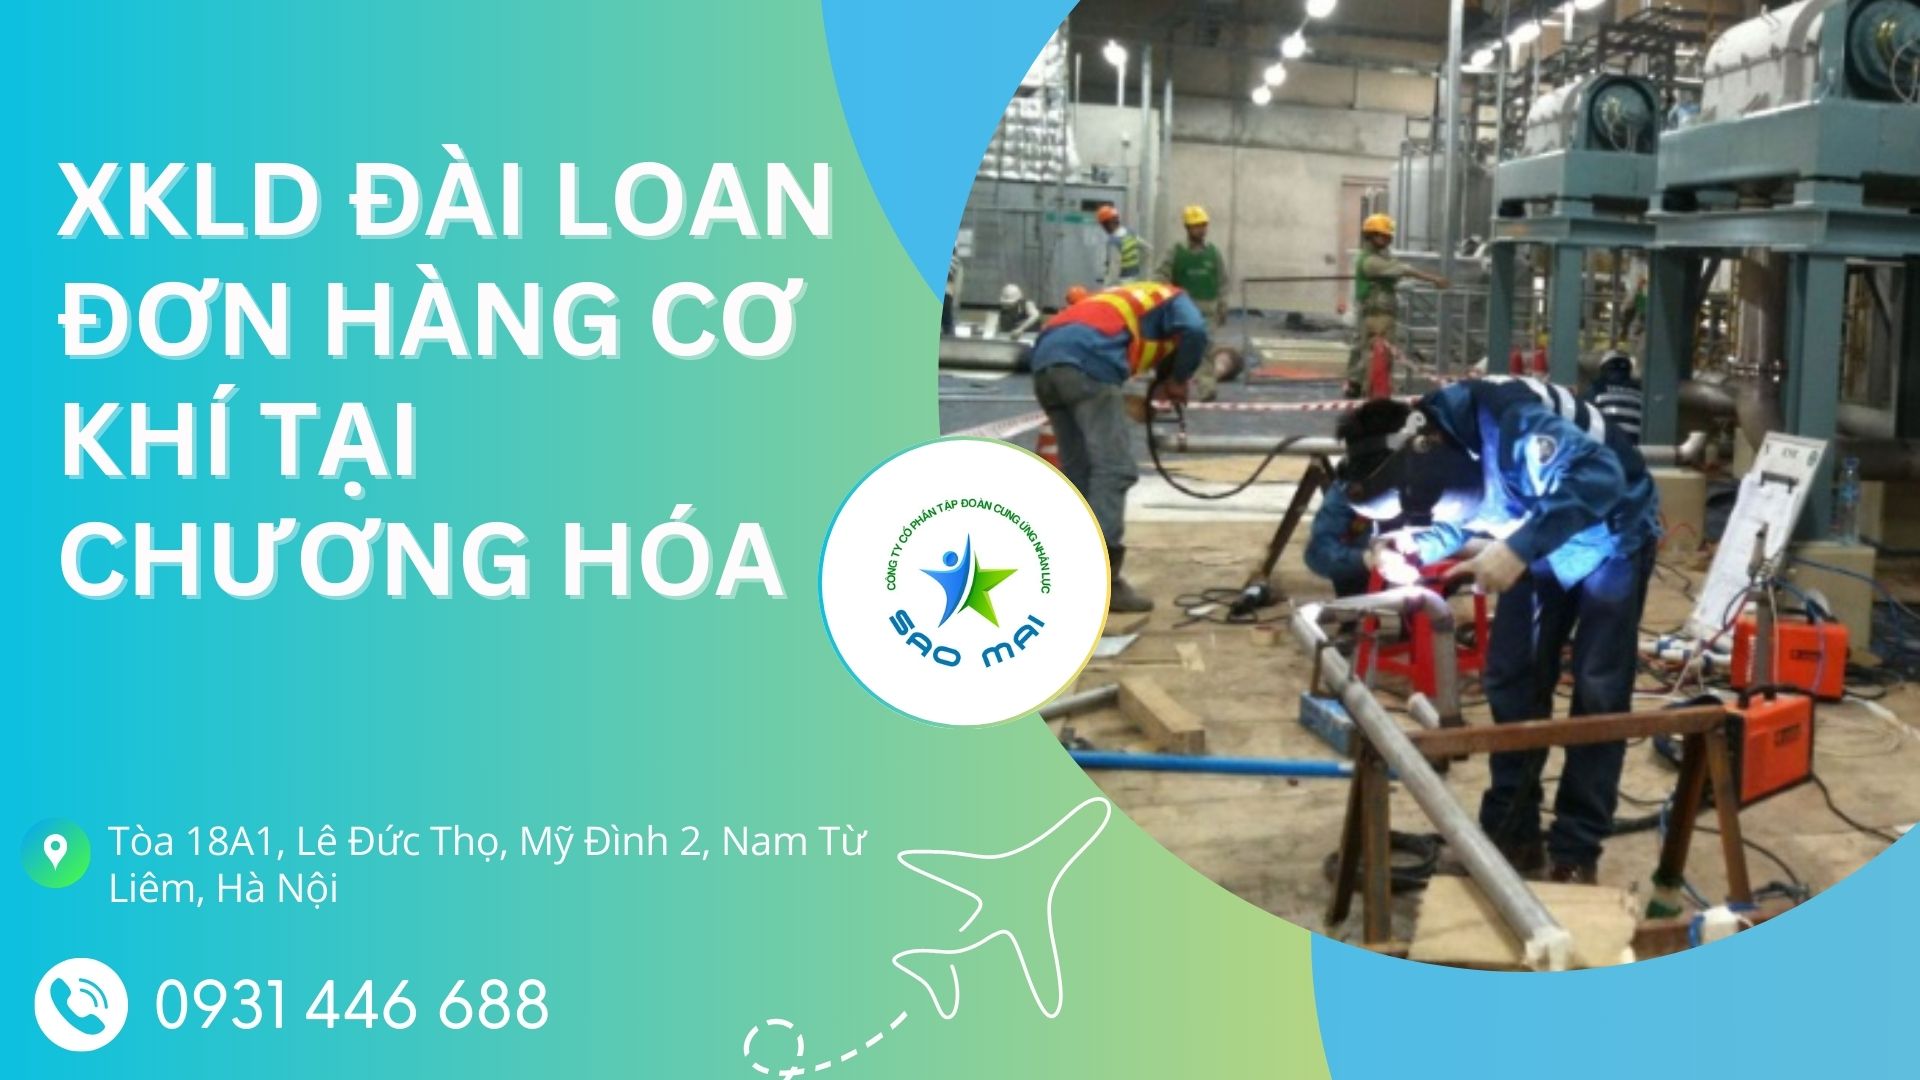 XKLD Đài Loan đơn hàng CƠ KHÍ xử lý bề mặt kim loại tại nhà máy Nam Dĩnh - Chương Hóa